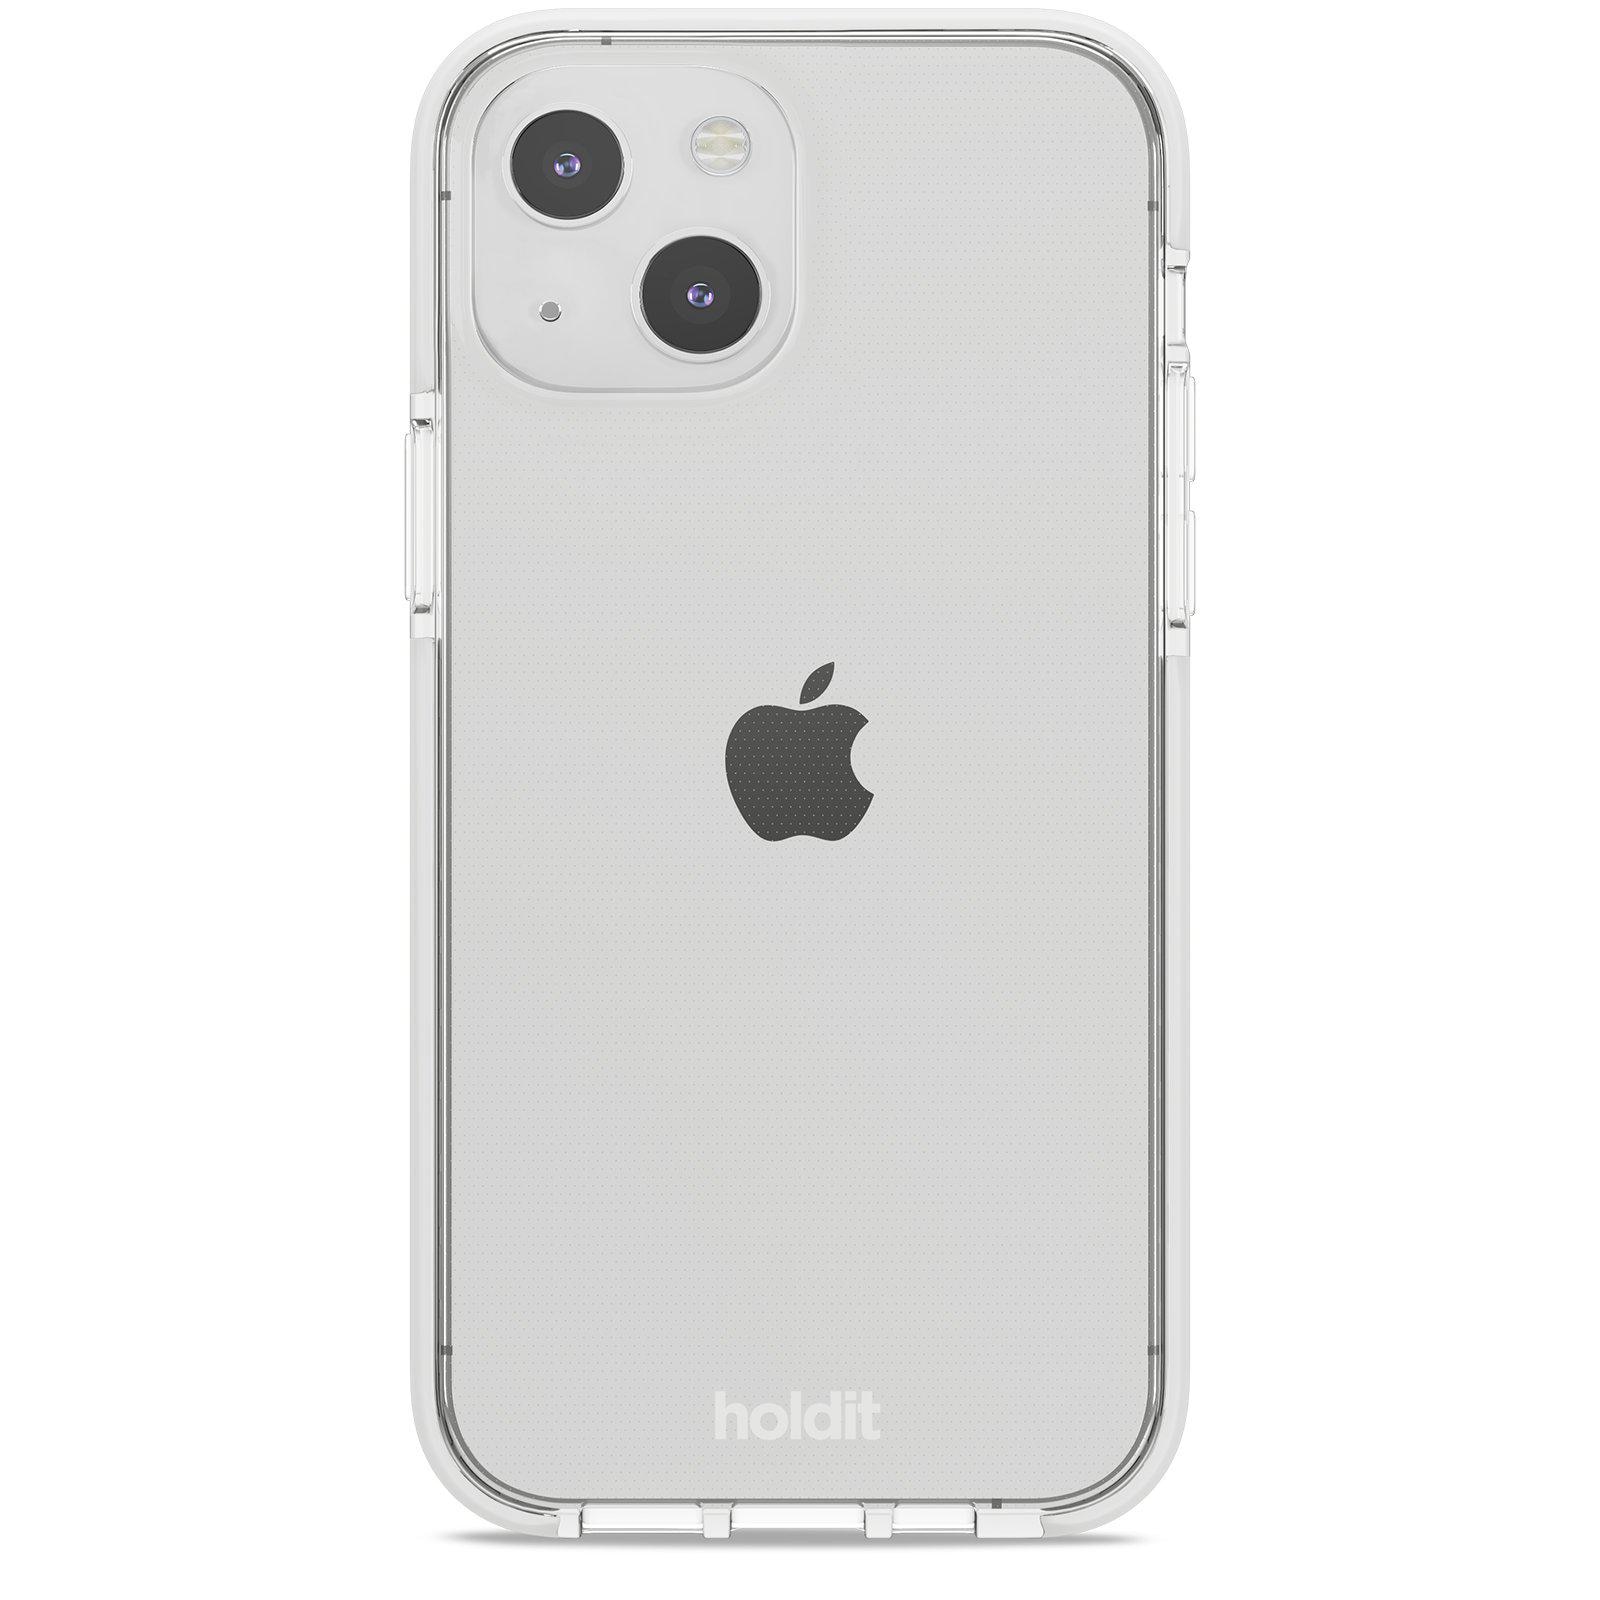 Seethru Case iPhone 14 White